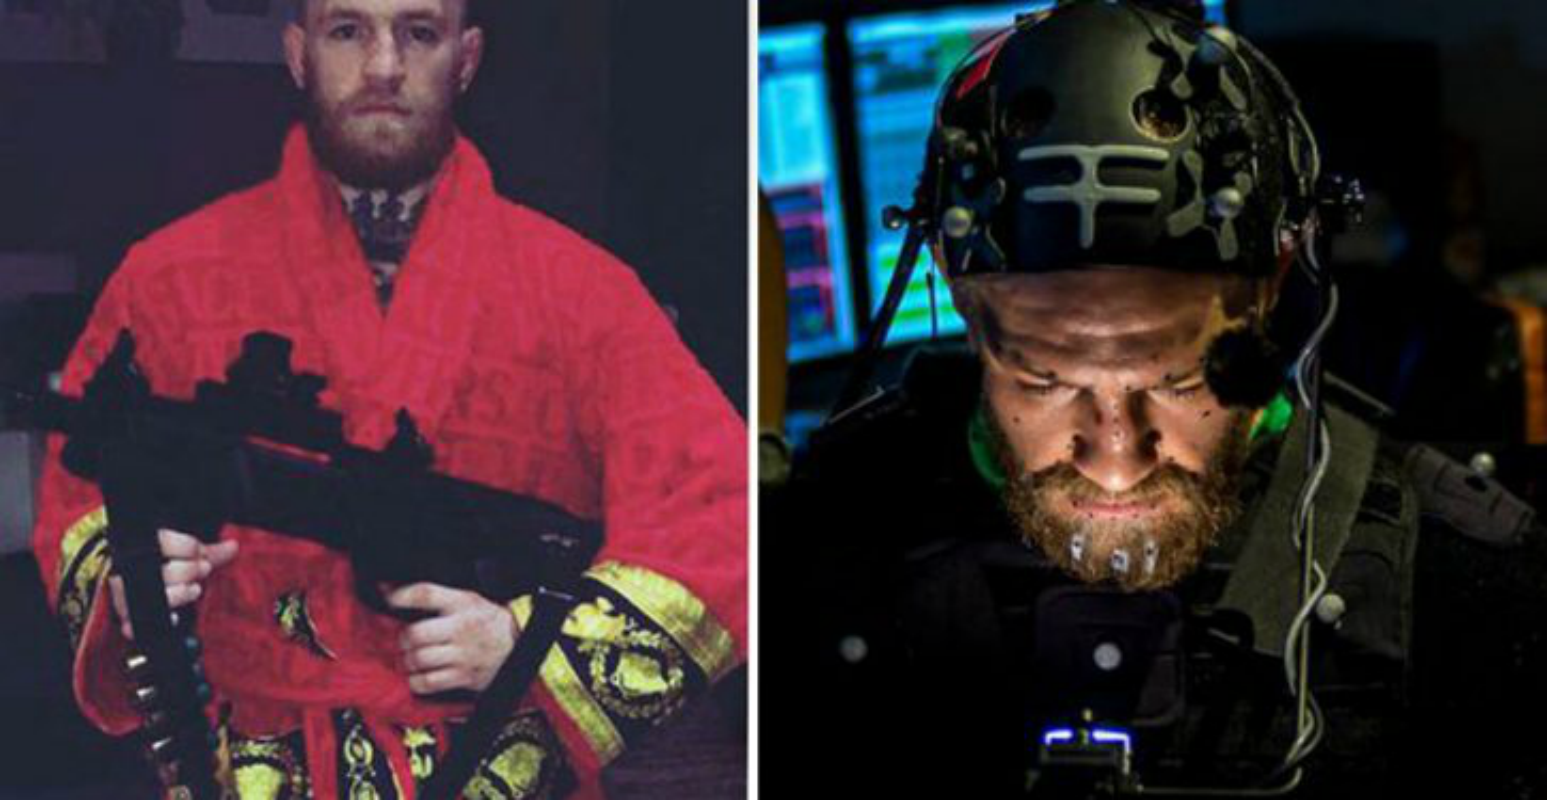 Conor-McGregor-aparecera-en-la-nueva-Call-of-Duty-Infinite-Warfare-gamersrd